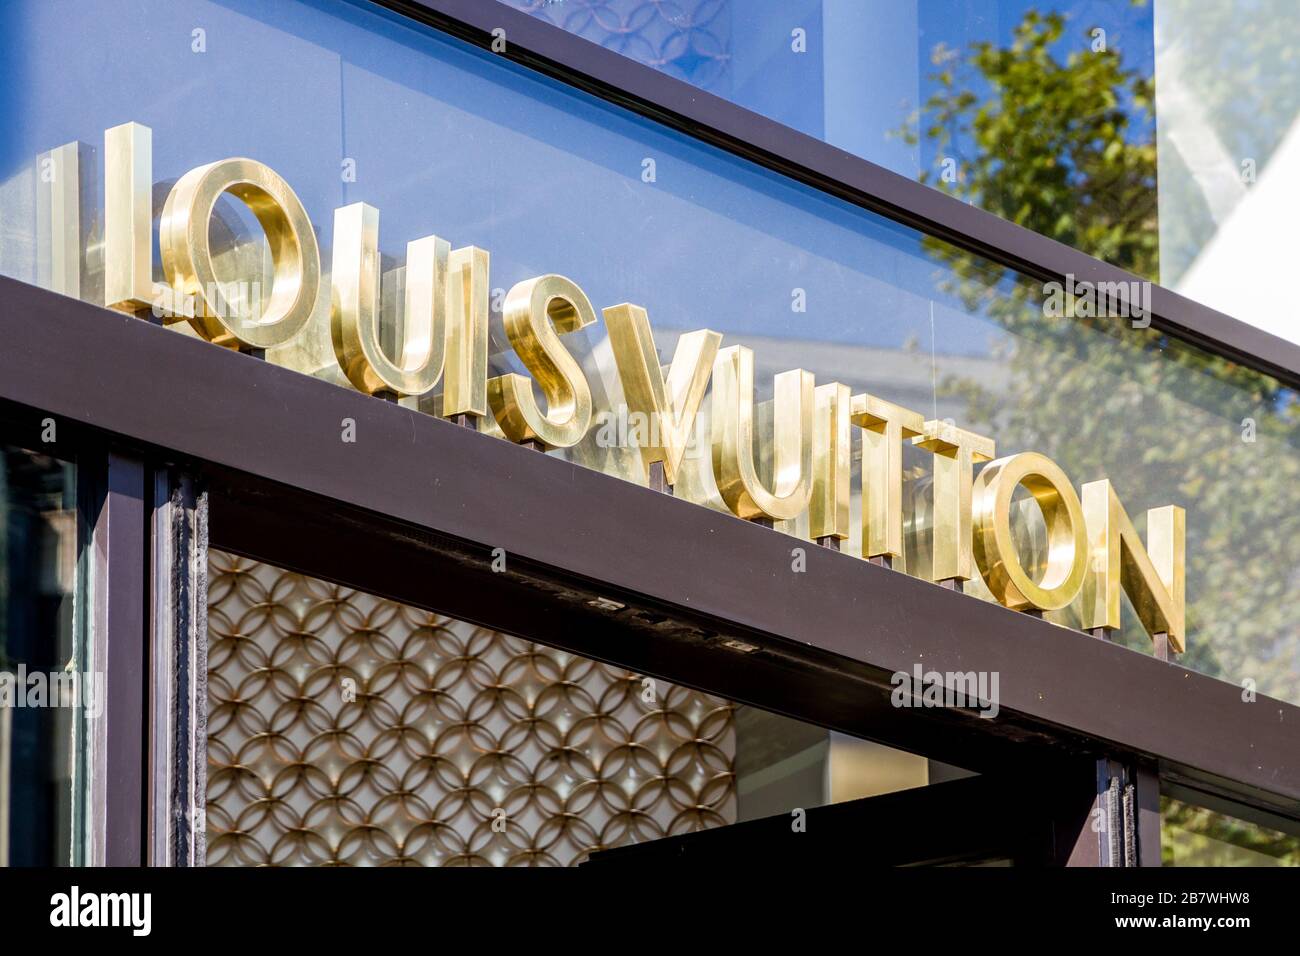 Paris/France - September 10, 2019 : The Louis Vuitton luxury store